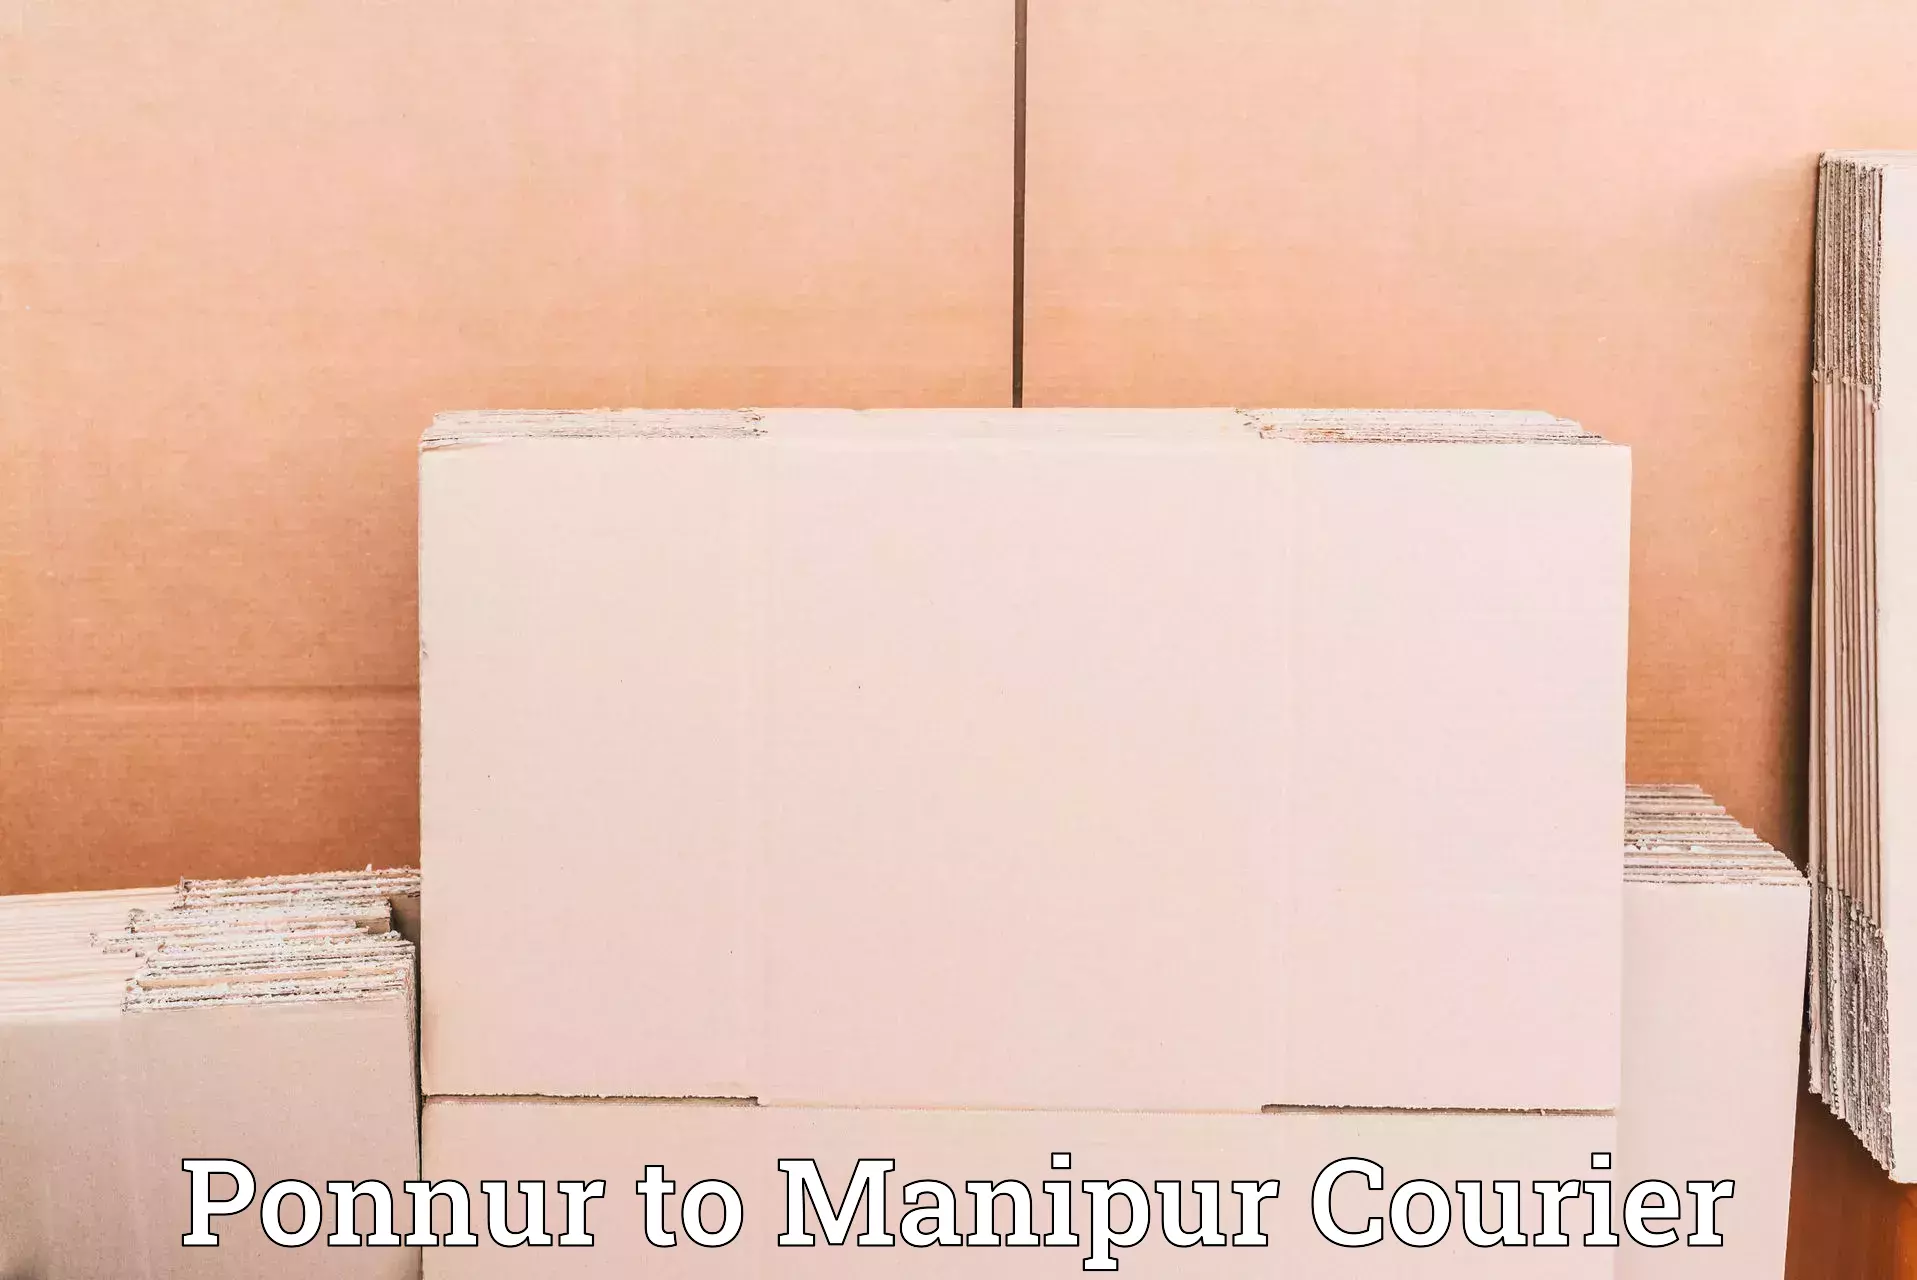 State-of-the-art courier technology Ponnur to Churachandpur